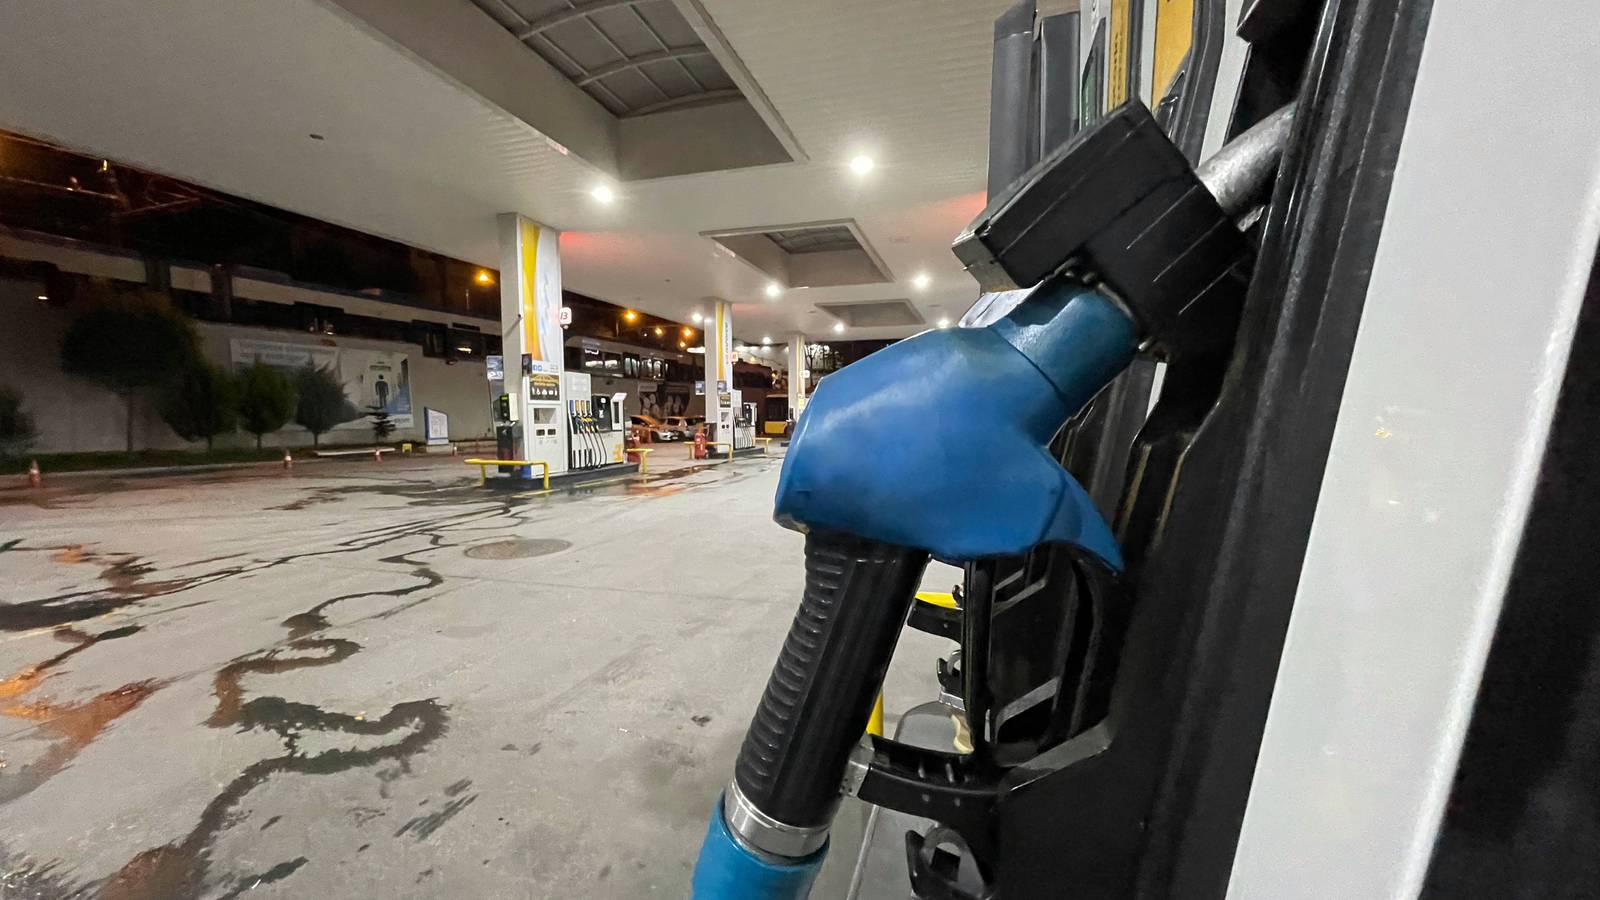 Fuel pump: questions over efuel future